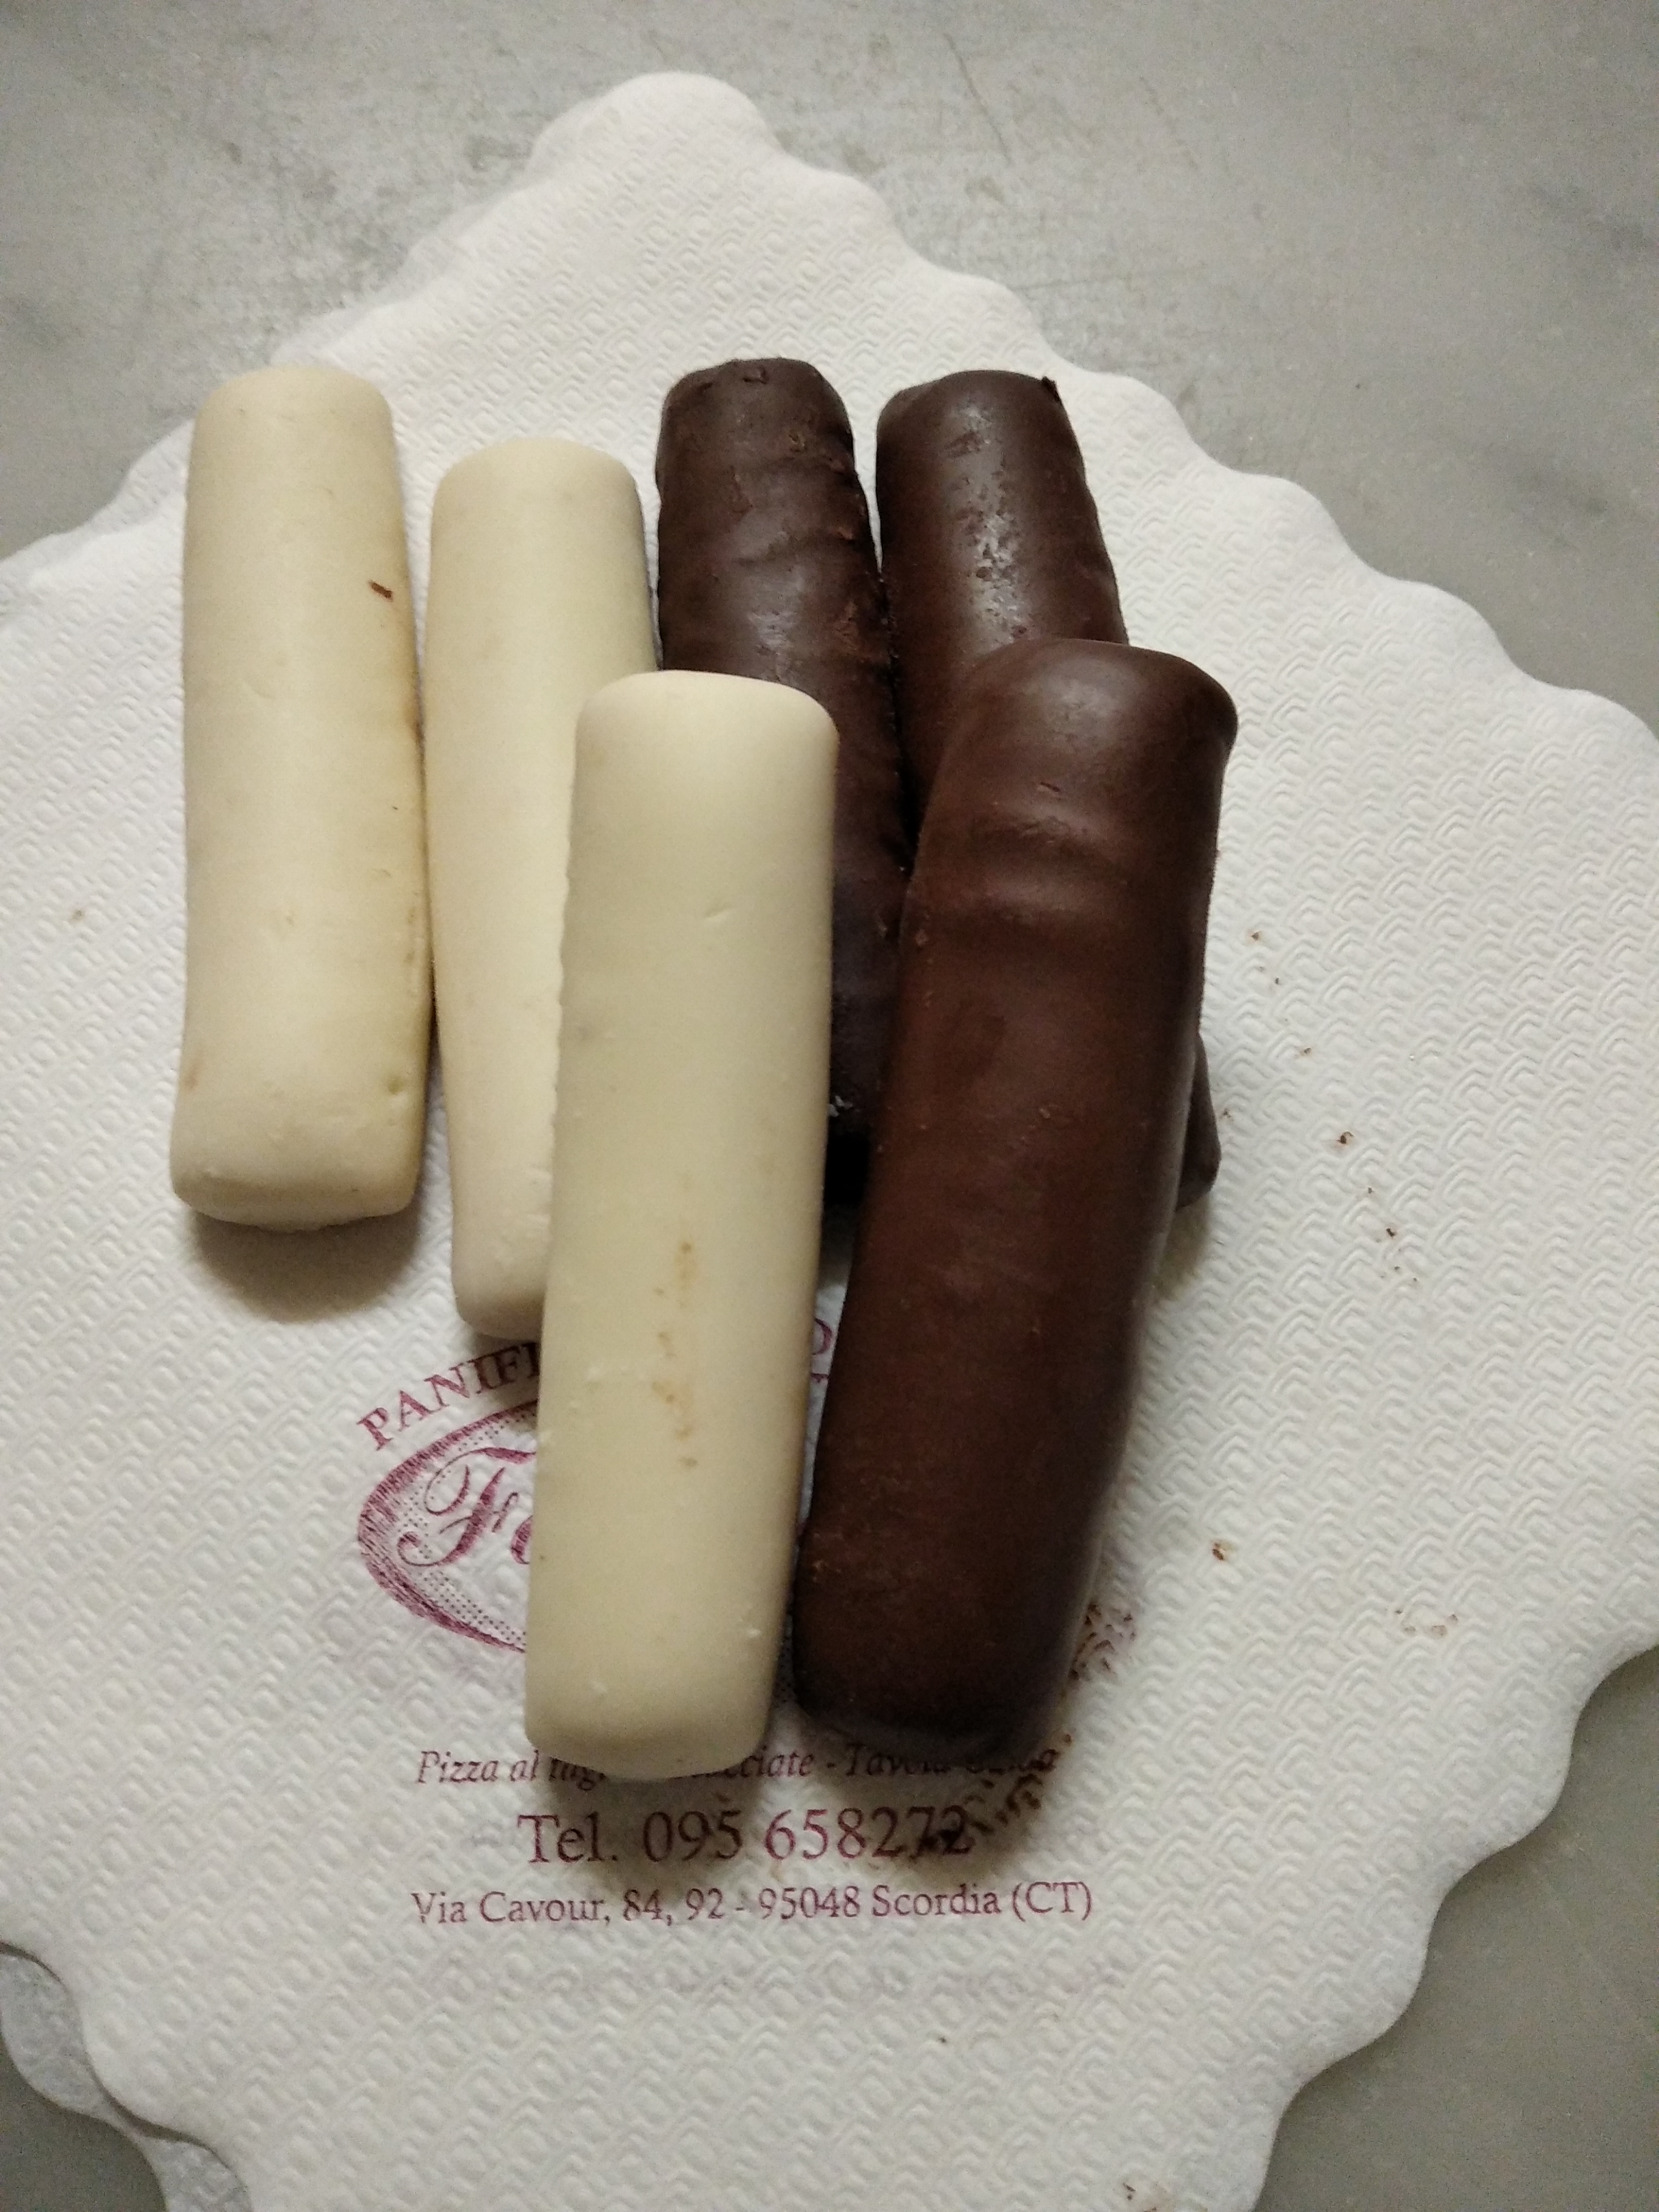 Bastoncini ricoperti con cioccolato bianco o fondente tipo "Togo" Confezione 500gr